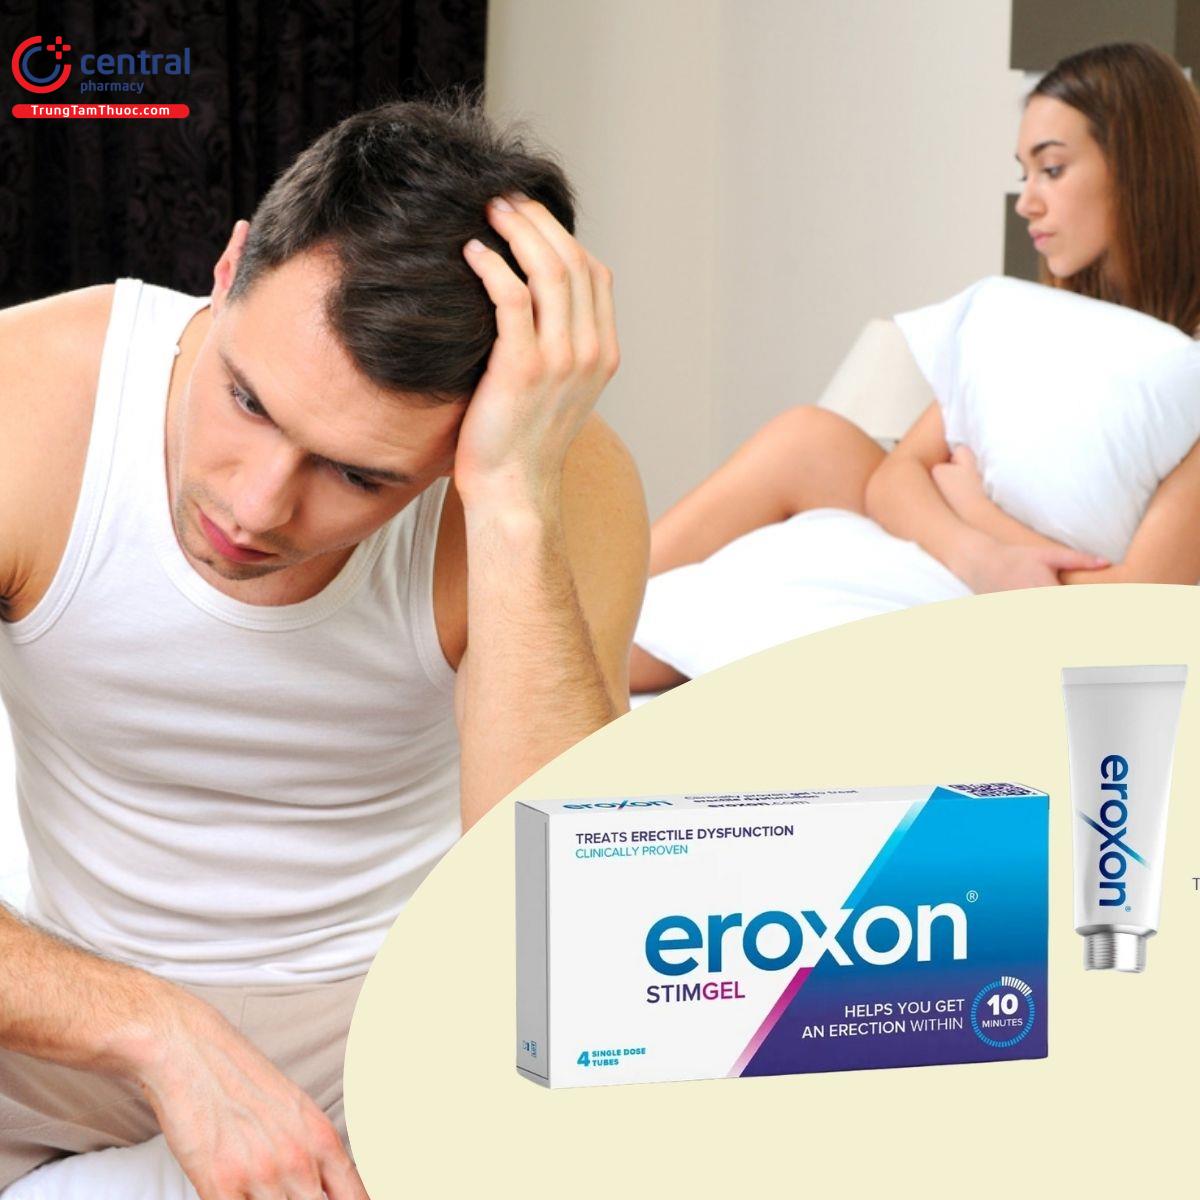 Eroxon - hiệu quả nhanh, an toàn với người sử dụng